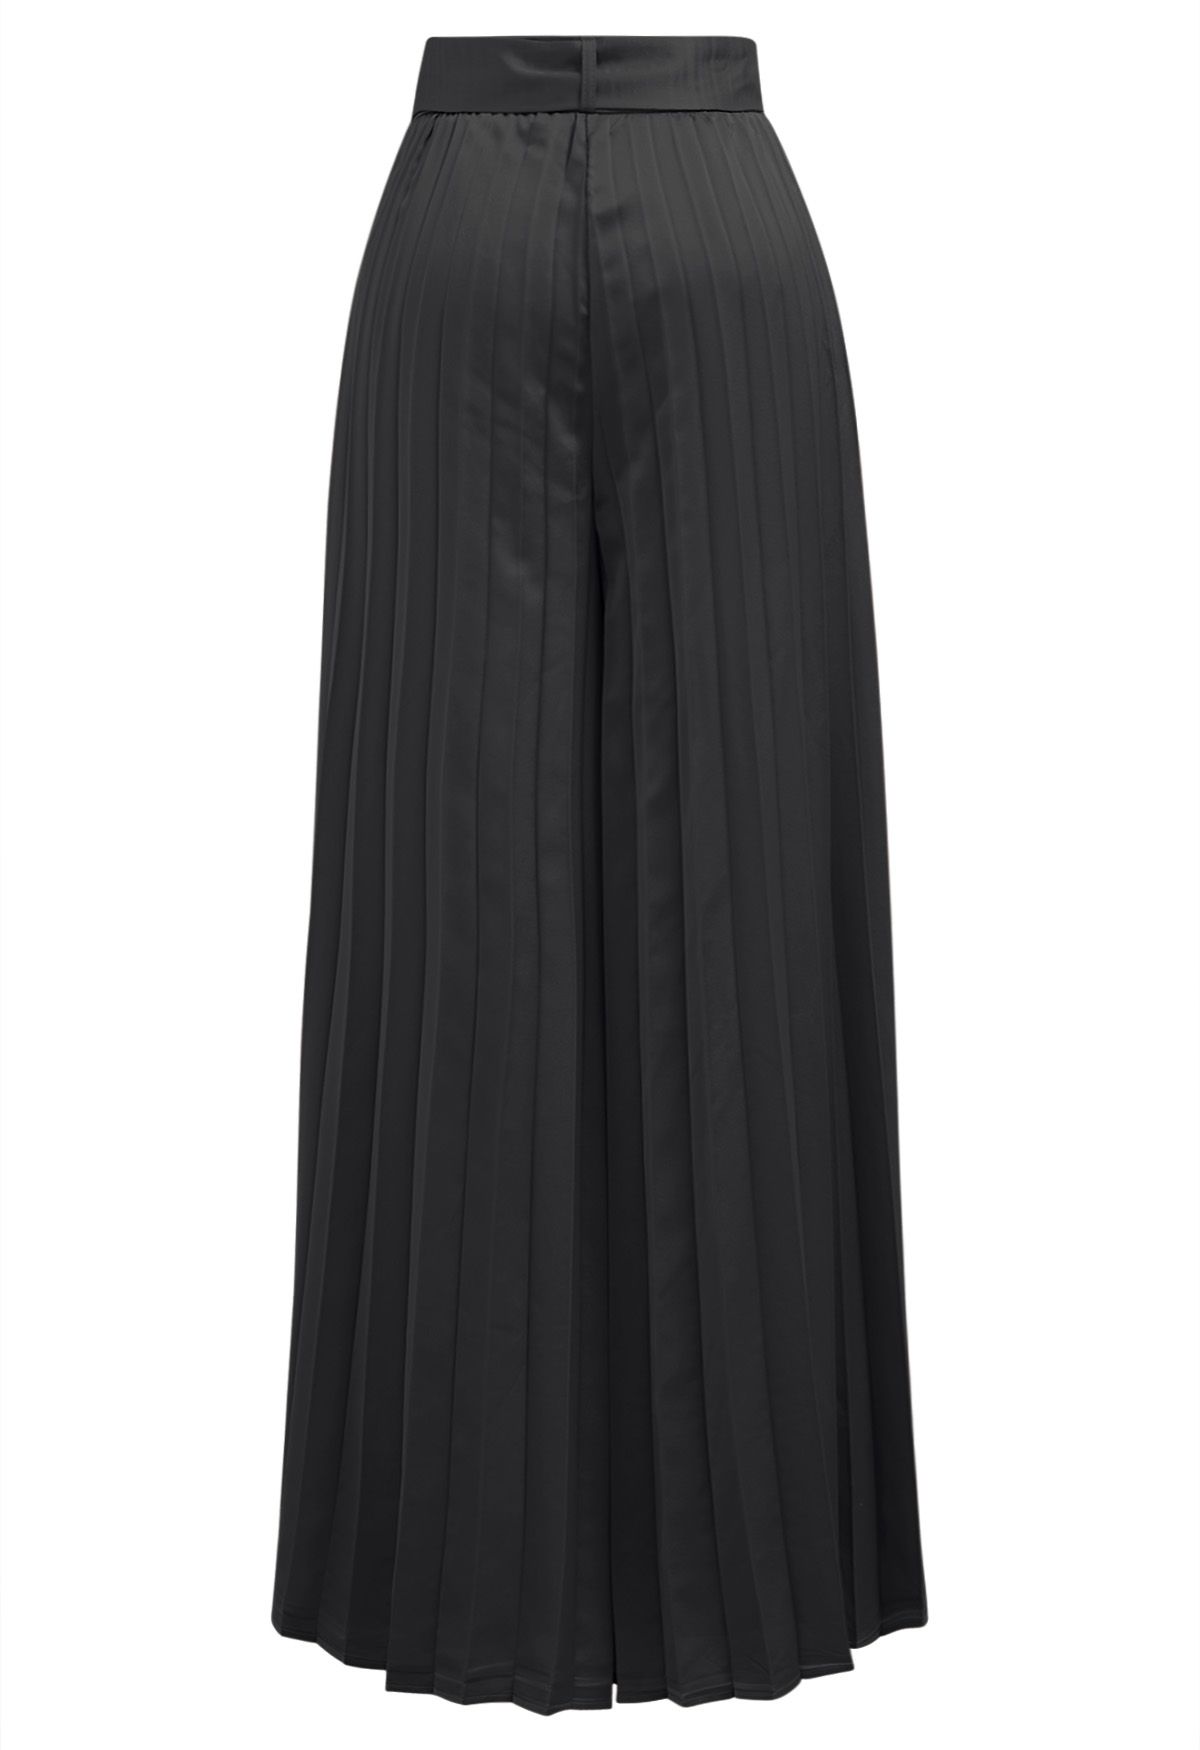 Pantalones anchos plisados con cinturón O-Ring en negro